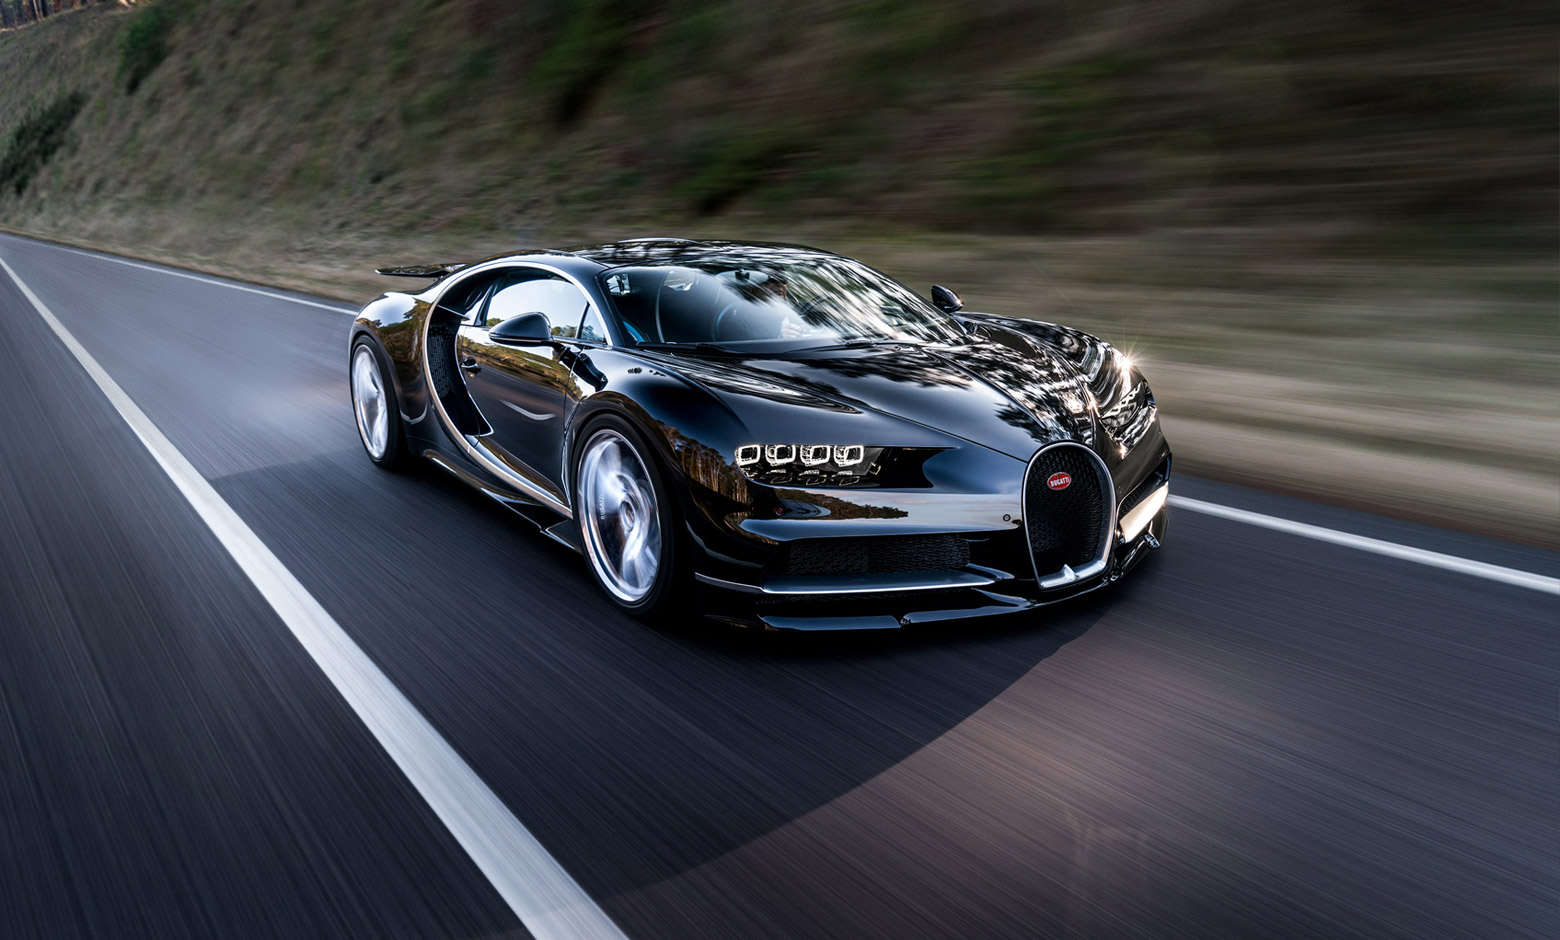 Bugatti Chiron là chiếc siêu xe mang đầy sự xa hoa và đỉnh cao trong ngành ô tô, đến với những hình ảnh liên quan đến chiếc xe này, bạn sẽ cảm nhận được niềm đam mê, đẳng cấp mà nó mang lại. Chắc chắn bạn sẽ không thể rời mắt khỏi những thiết kế tuyệt đẹp của xe này.